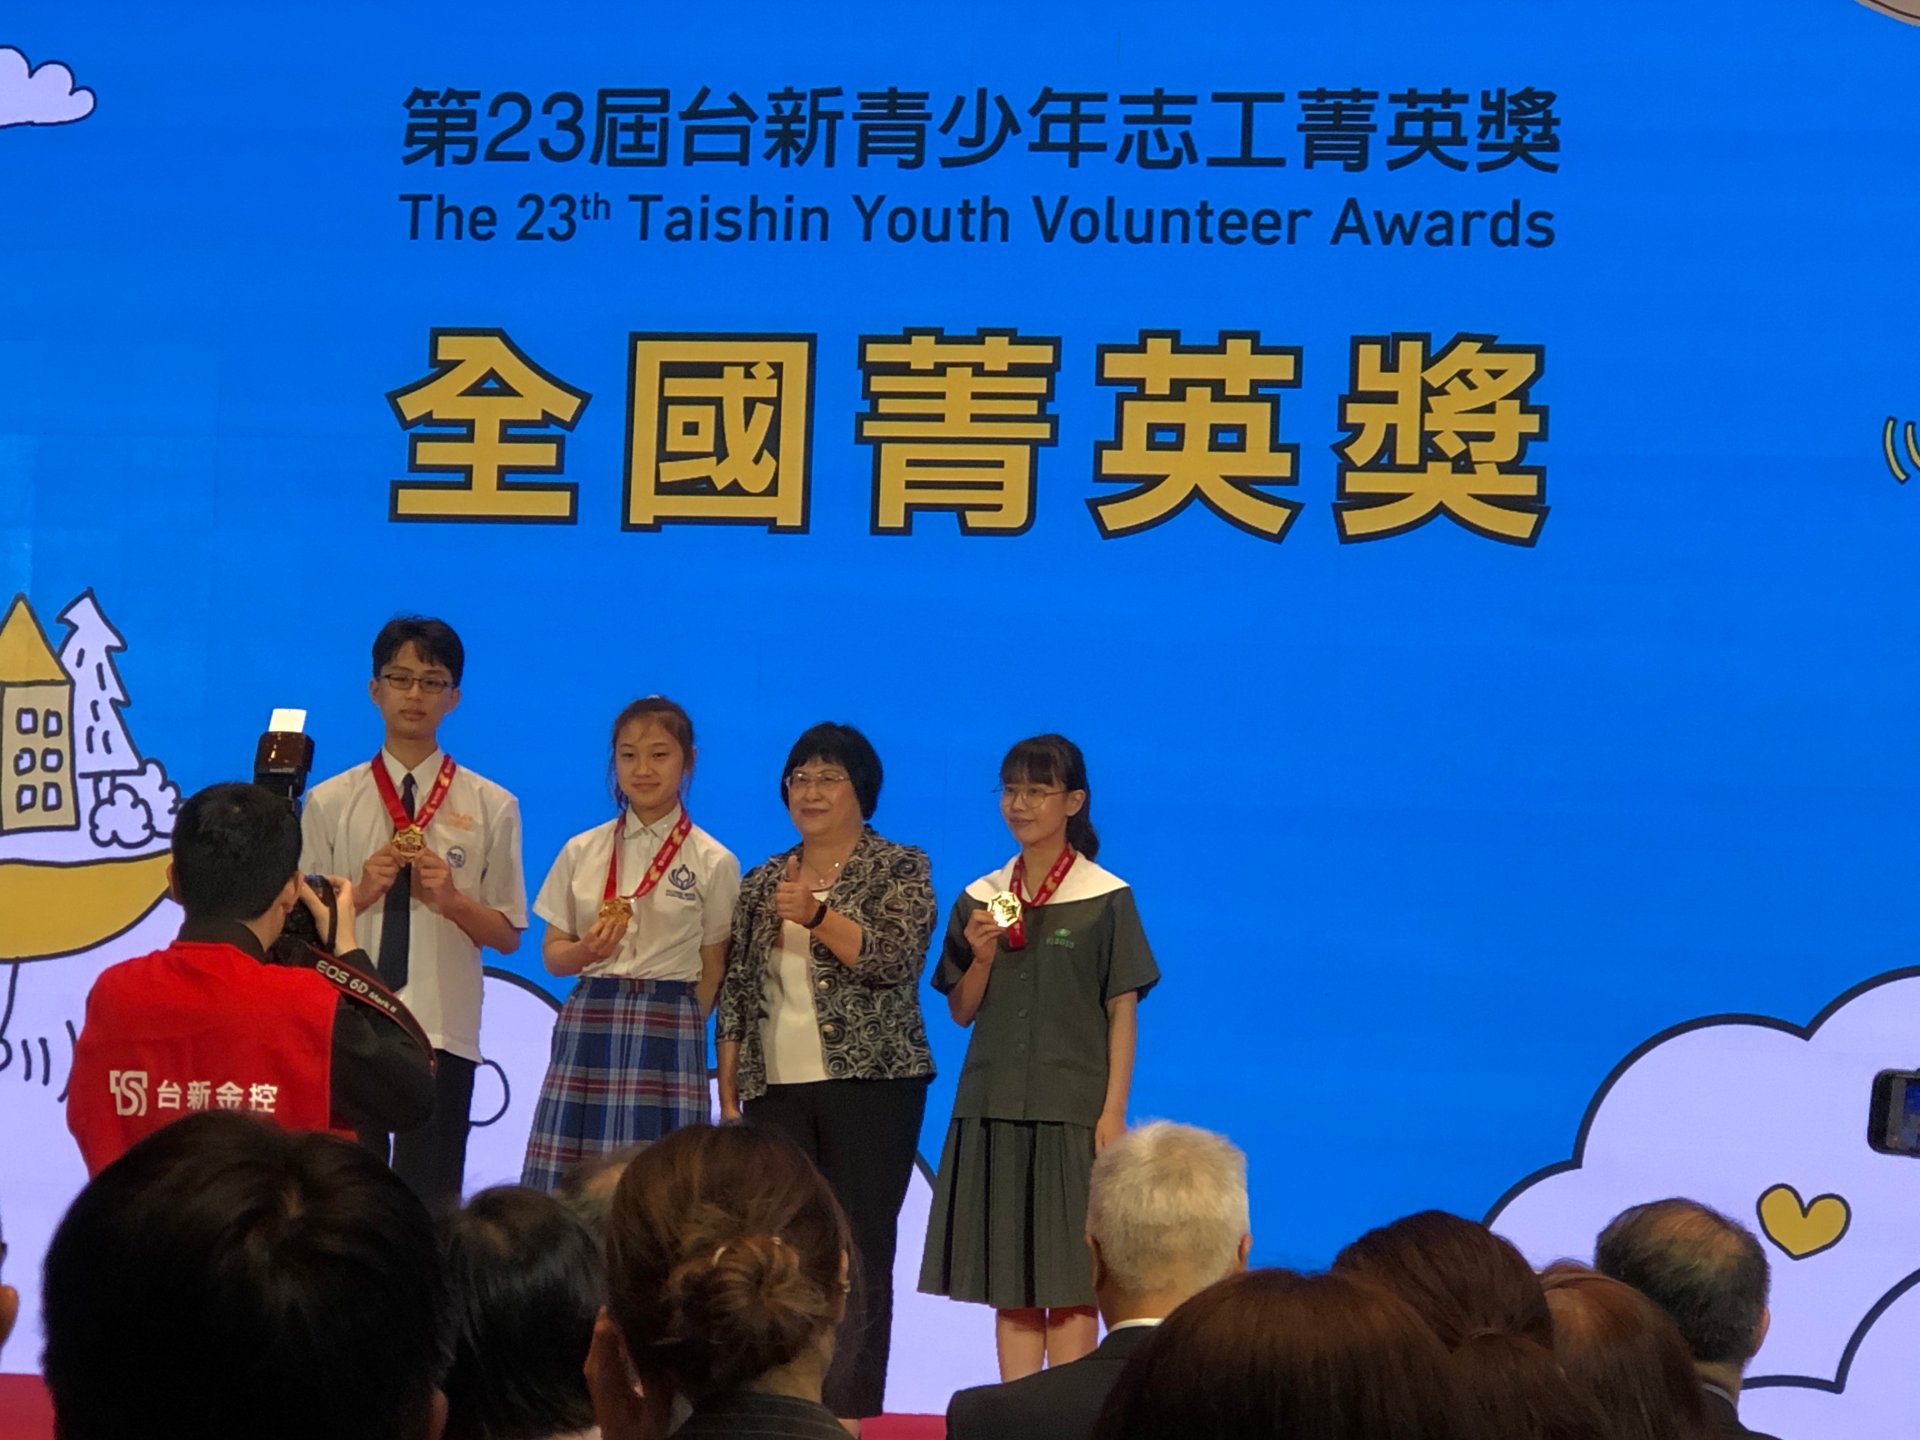 臺南慈中高三黃映瑜獲頒台新青少年志工的前十名之全國菁英獎